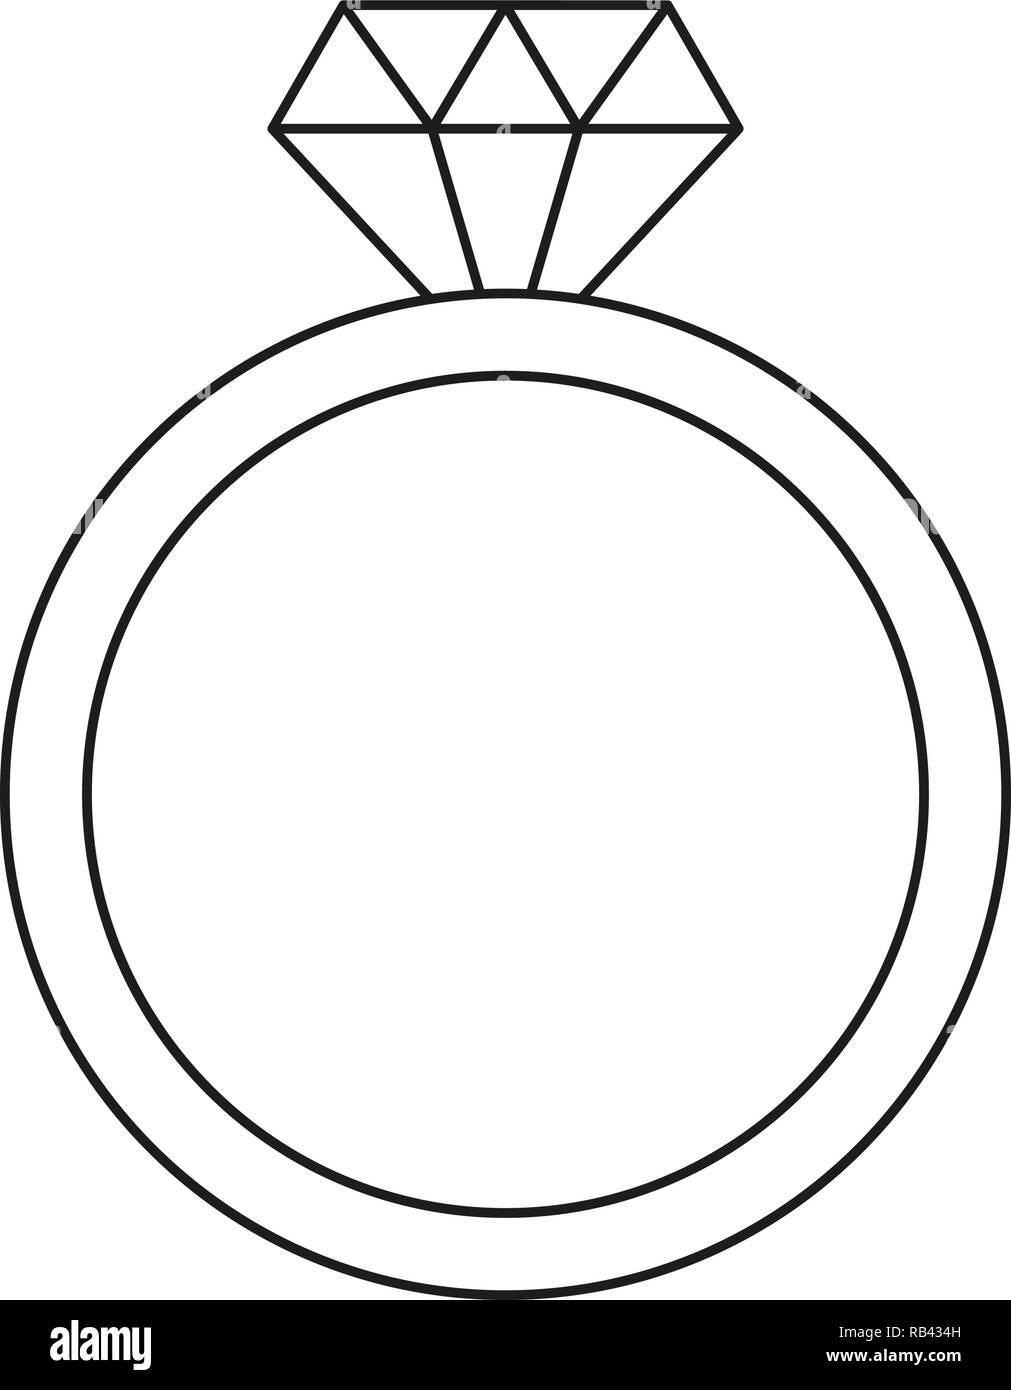 Line art black and white diamond ring Stock Vector